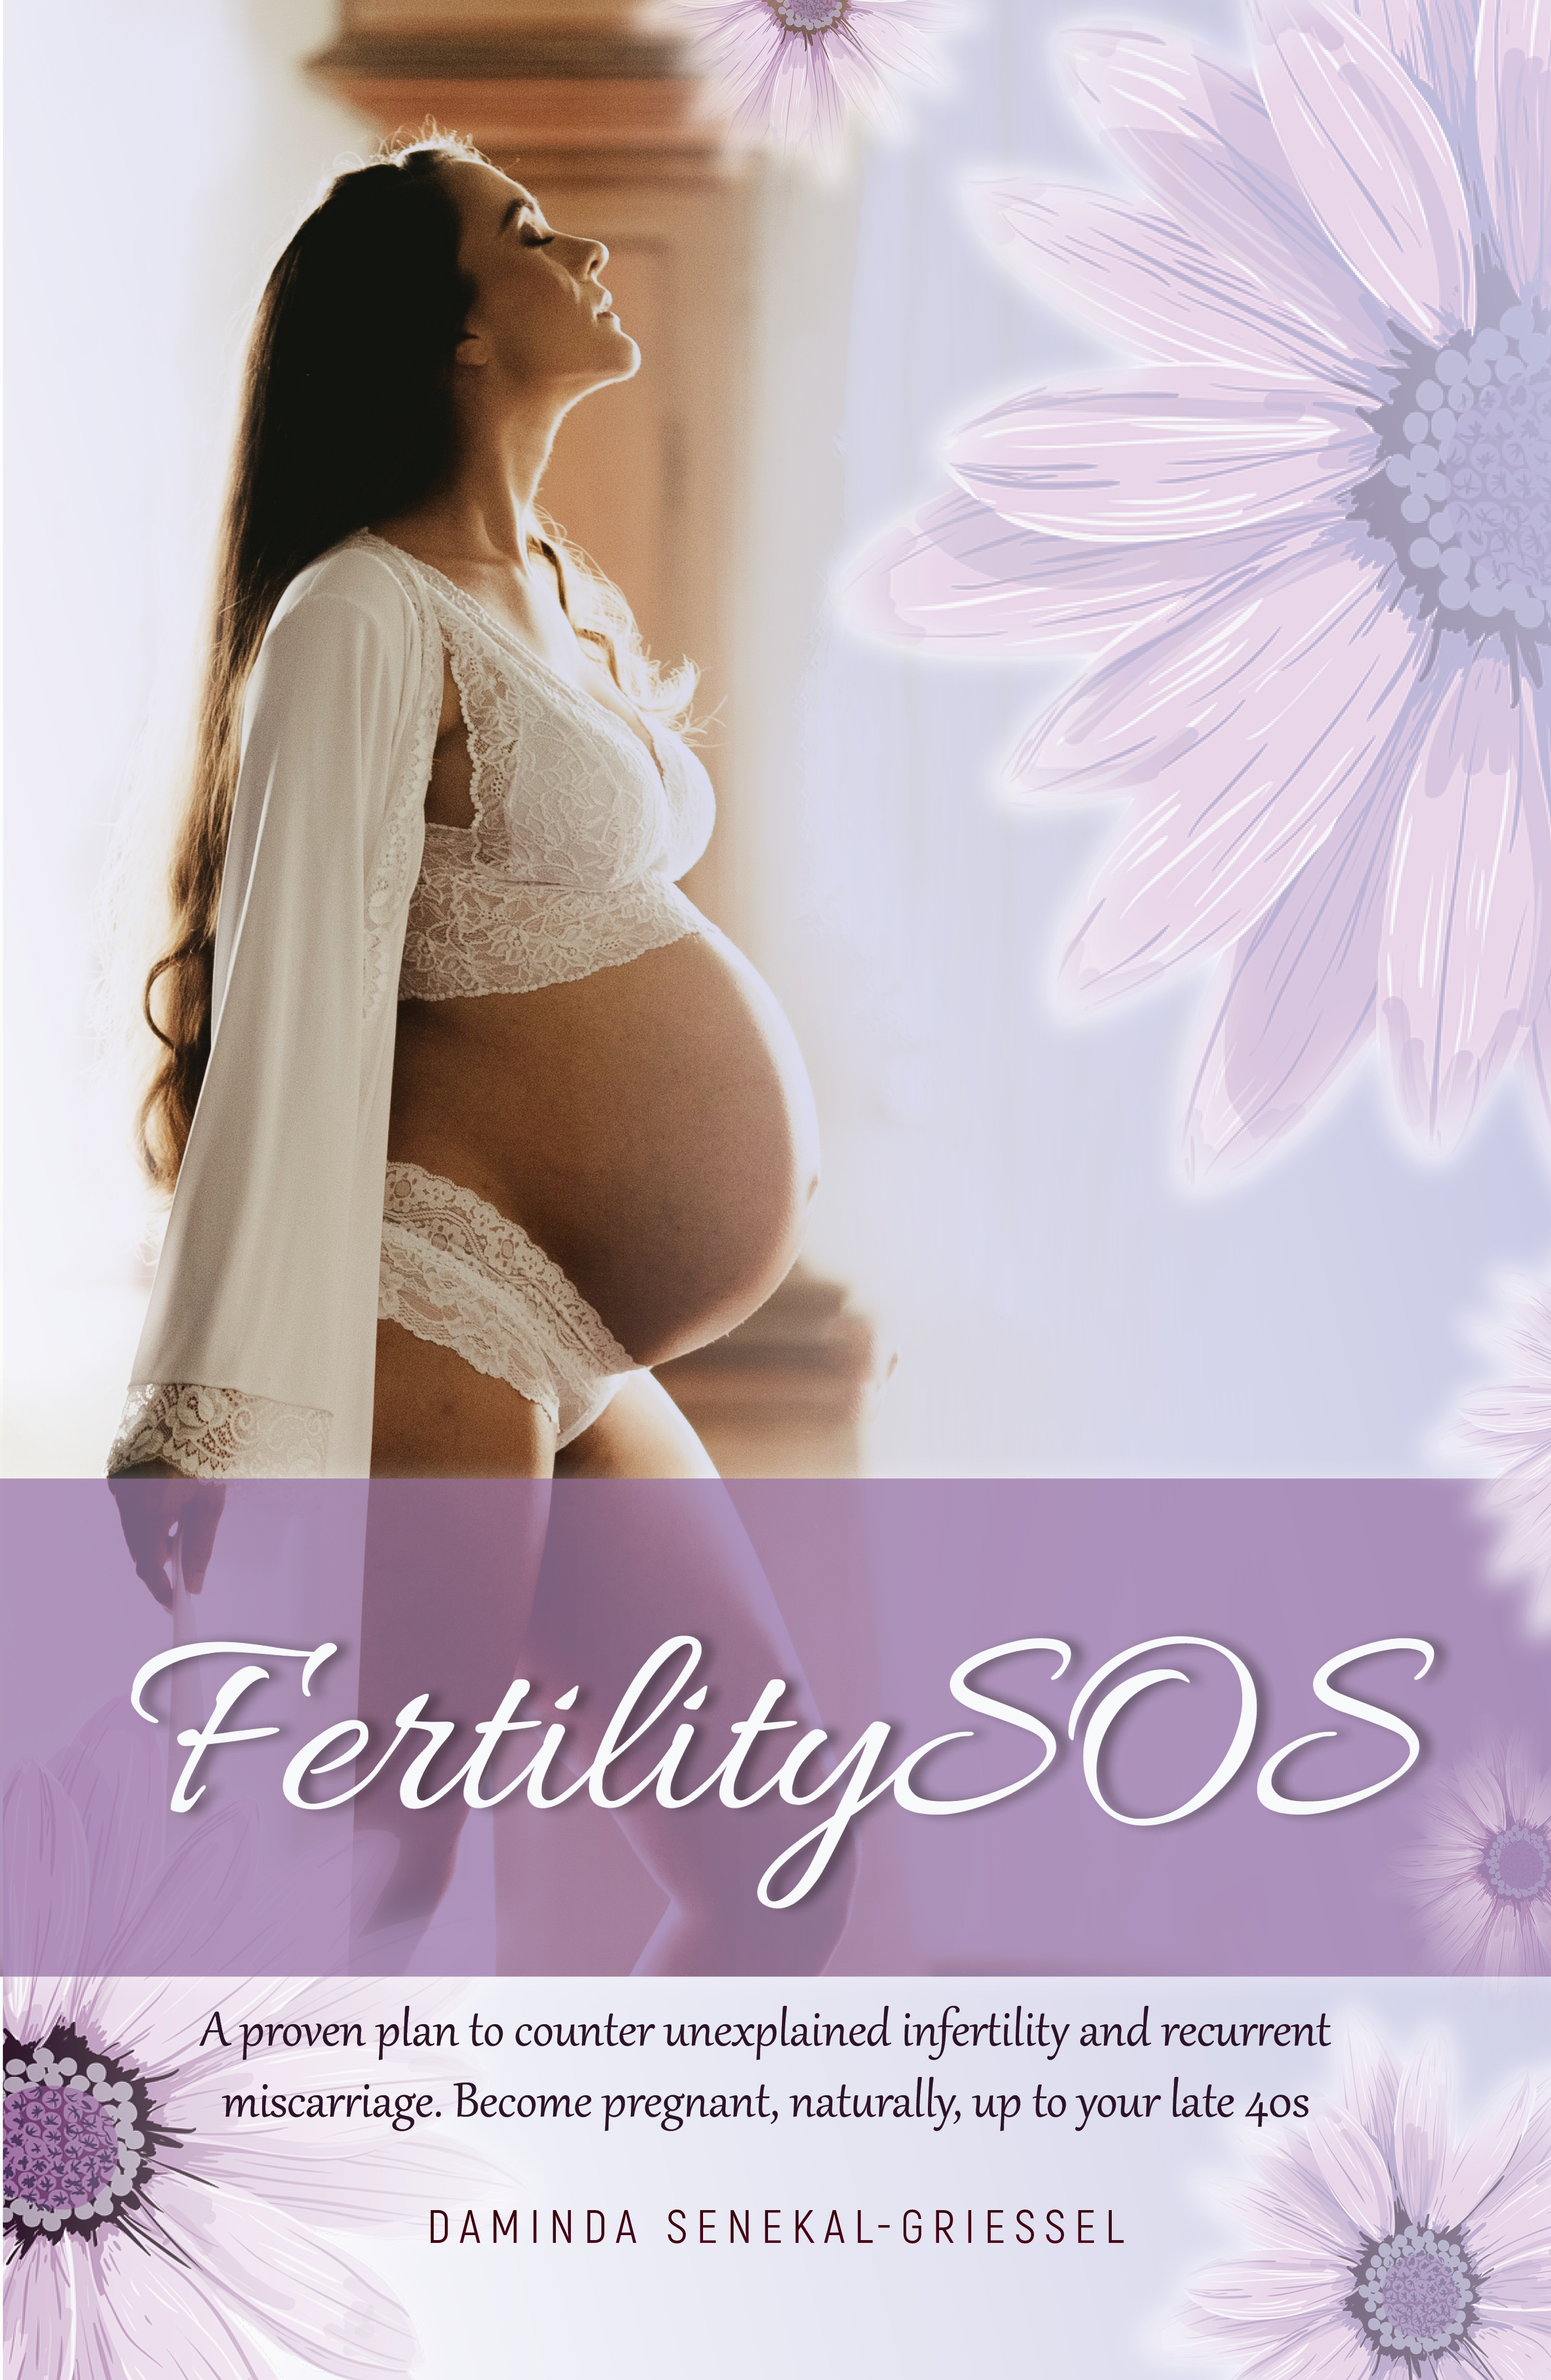 Fertilitysos